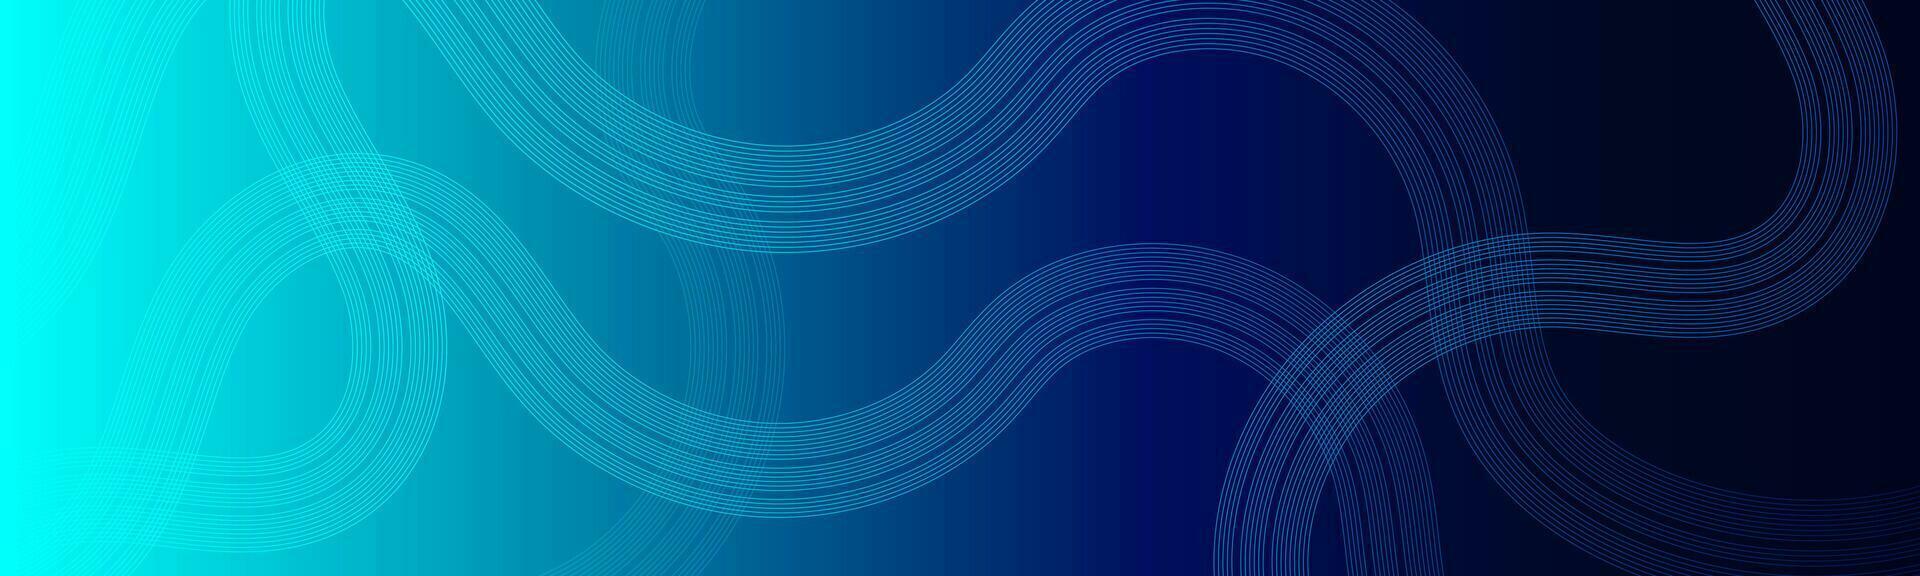 abstrakt mörk blå vinka cirklar rader teknologi bakgrund. modern lutning med lysande rader skinande geometrisk form och diagonal, för broschyr, omslag, affisch, baner, hemsida, rubrik vektor